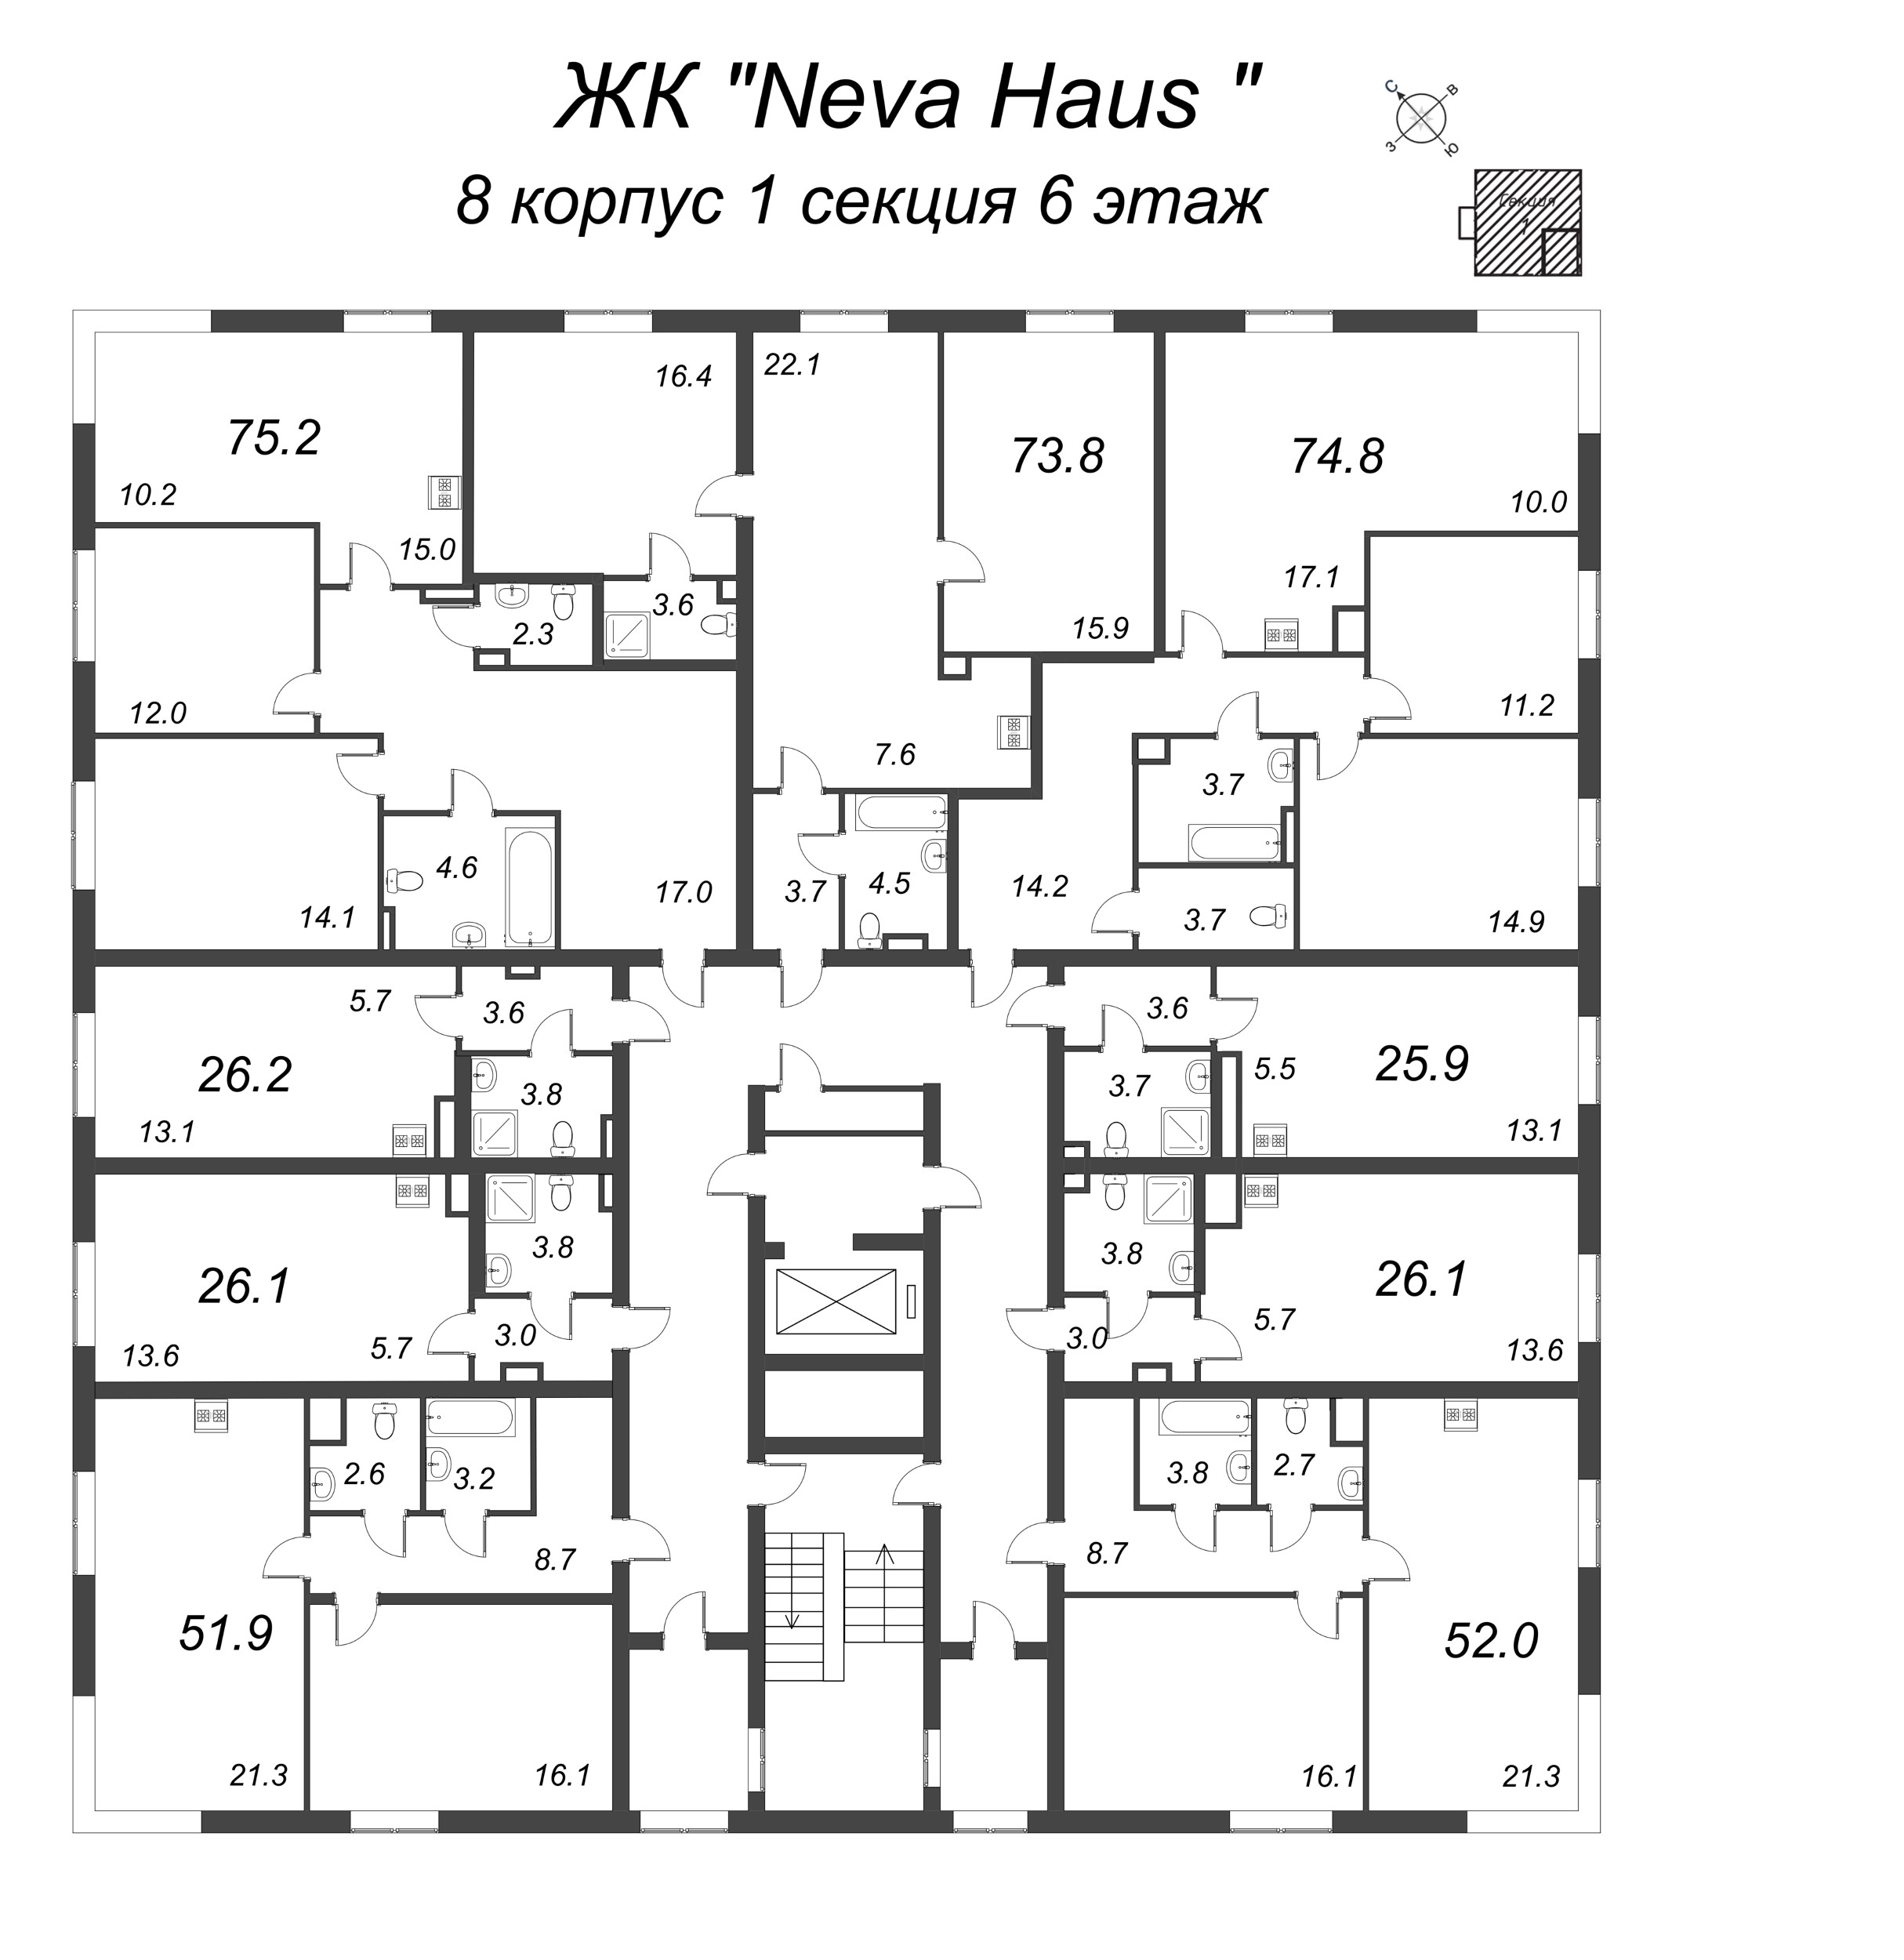 Квартира-студия, 26.1 м² в ЖК "Neva Haus" - планировка этажа